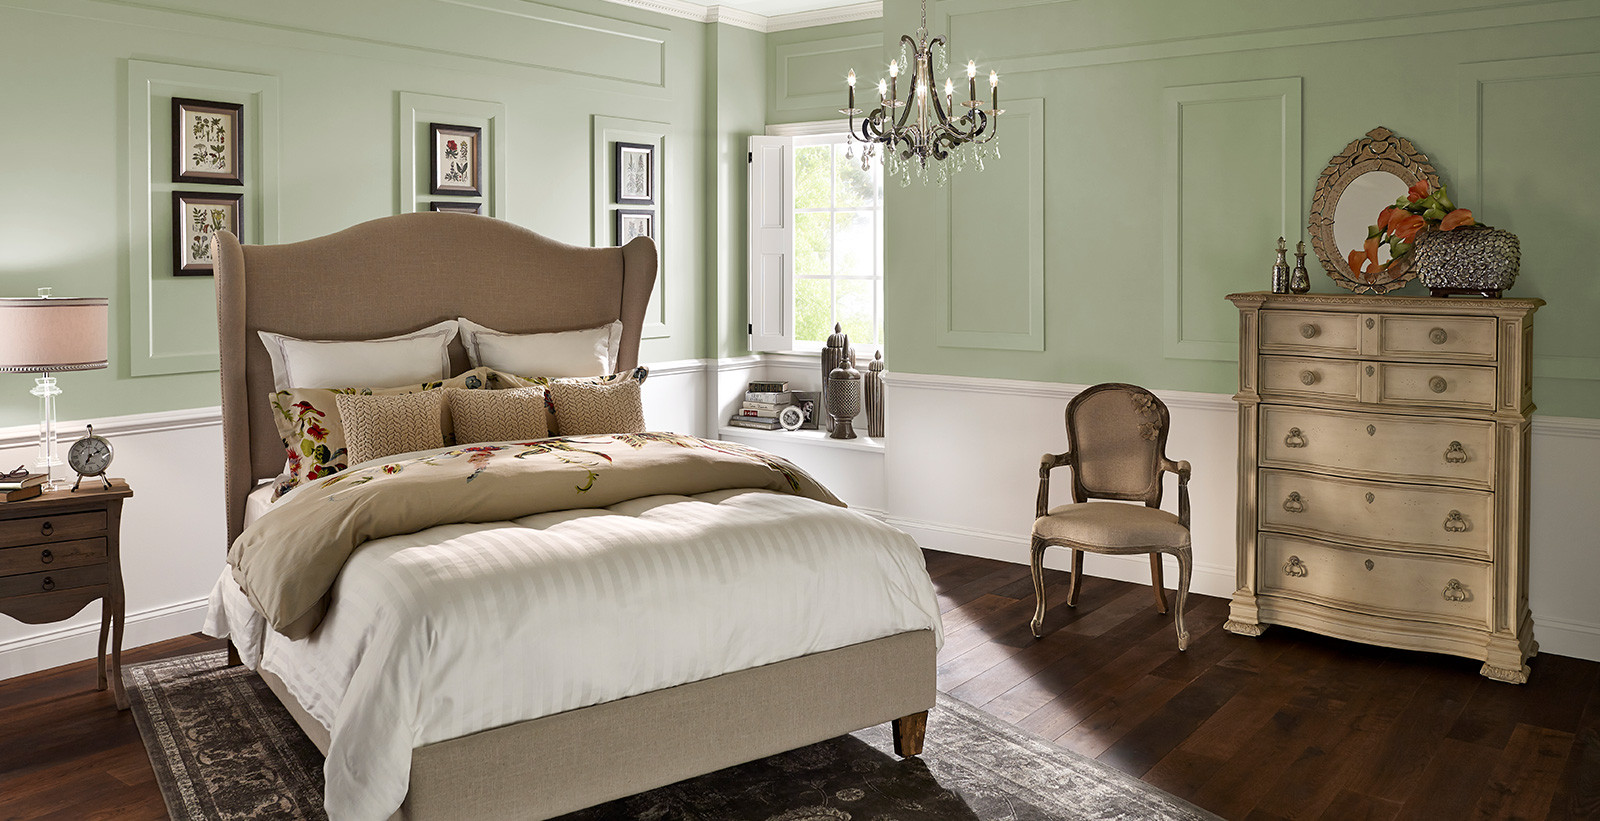 Behr Bedroom Colors
 Calming Bedroom Colors Relaxing Bedroom Colors Paint